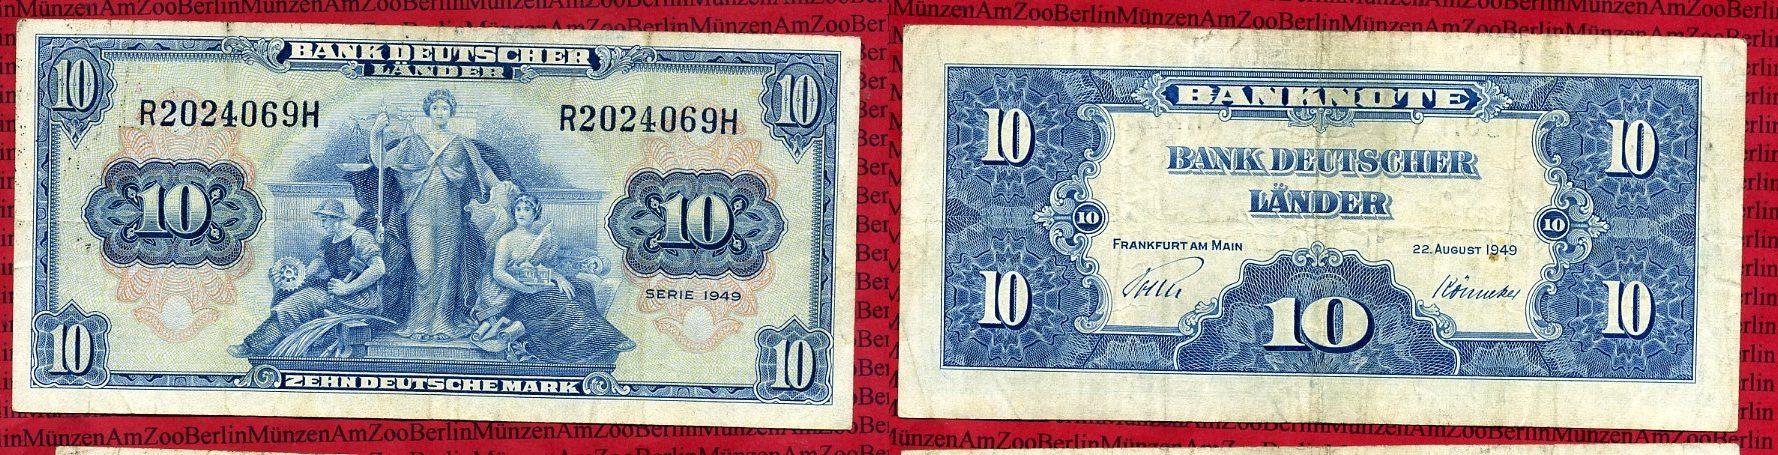 Foto Brd, Bank Deutscher Länder 10 Deutsche Mark Bank Deutscher Länder 1949